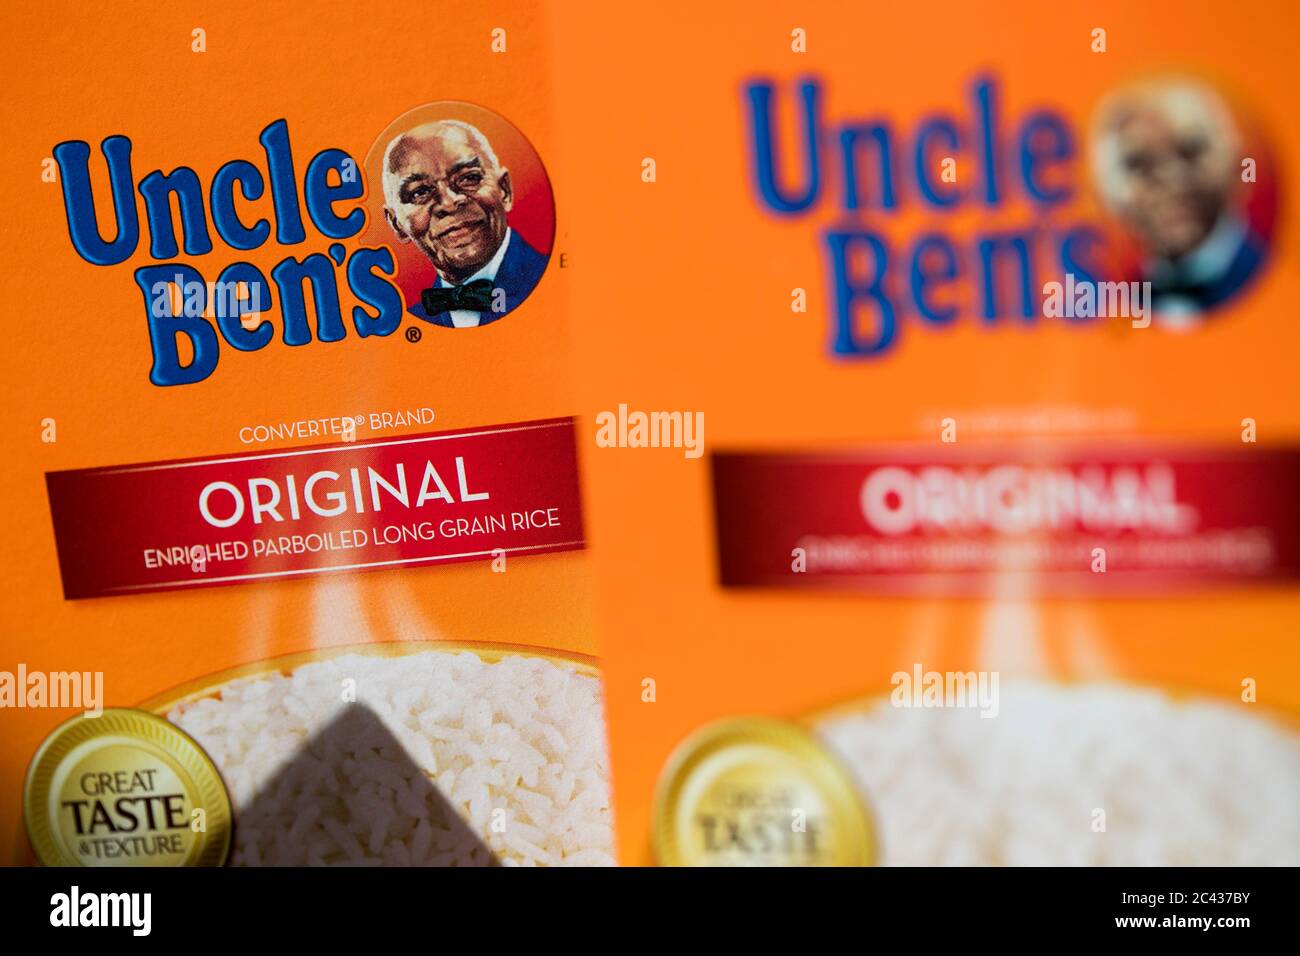 Uncle Ben's Original Rice 16 oz.